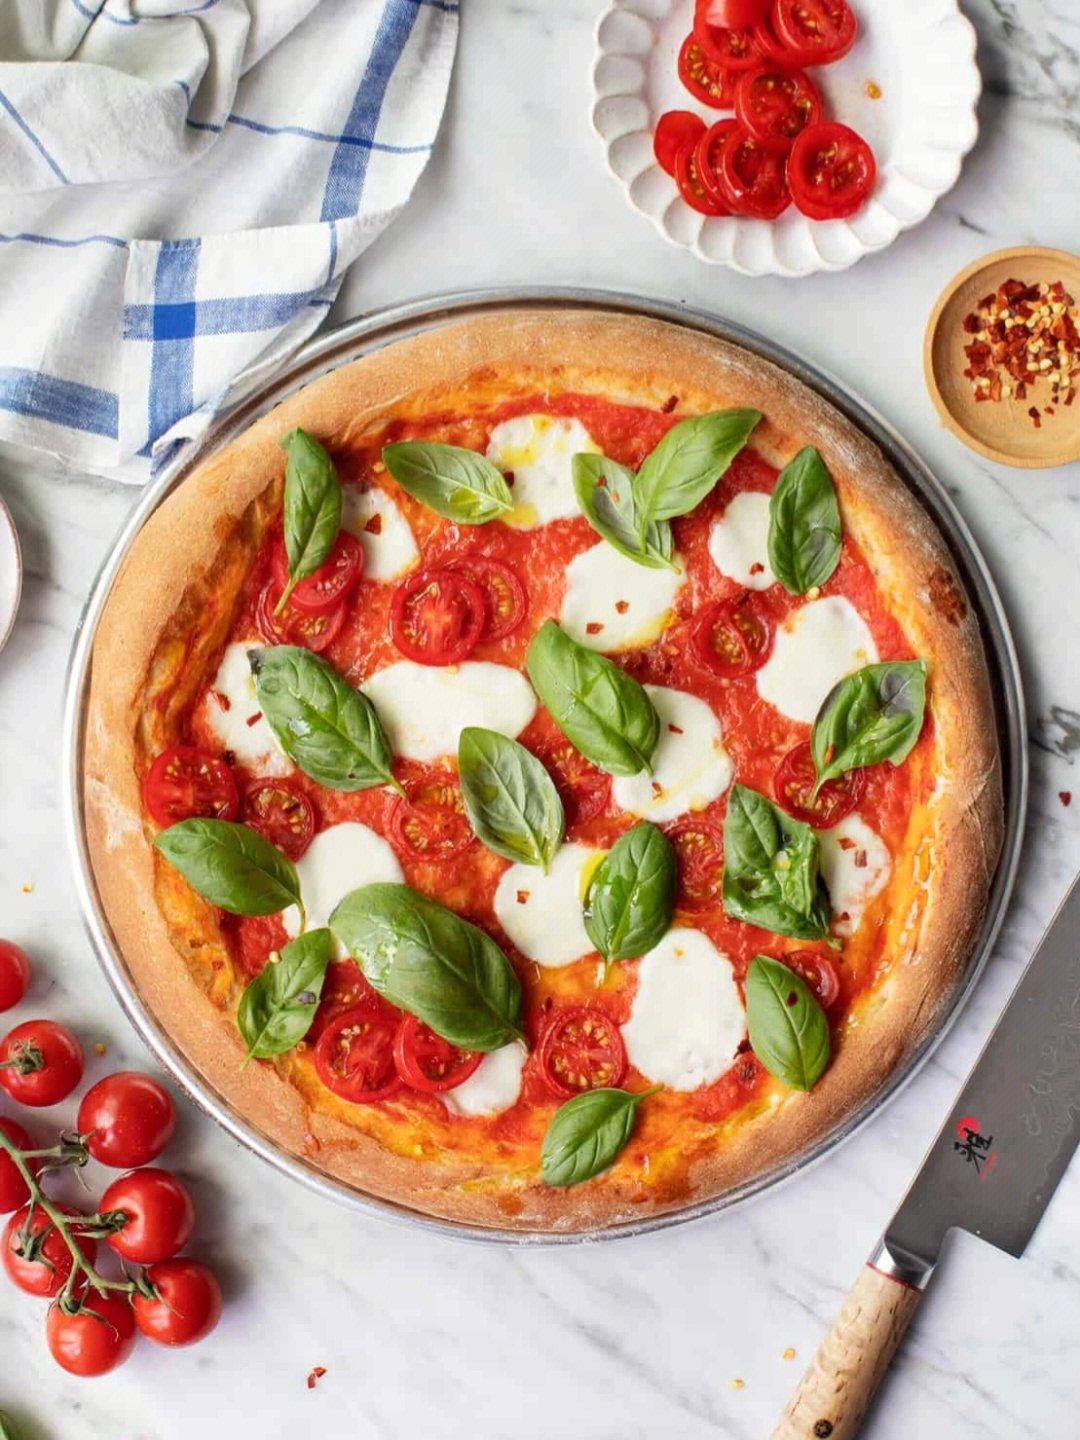 成立于1984年6月的意大利正宗那不勒斯披萨协会就只认证了两种正宗